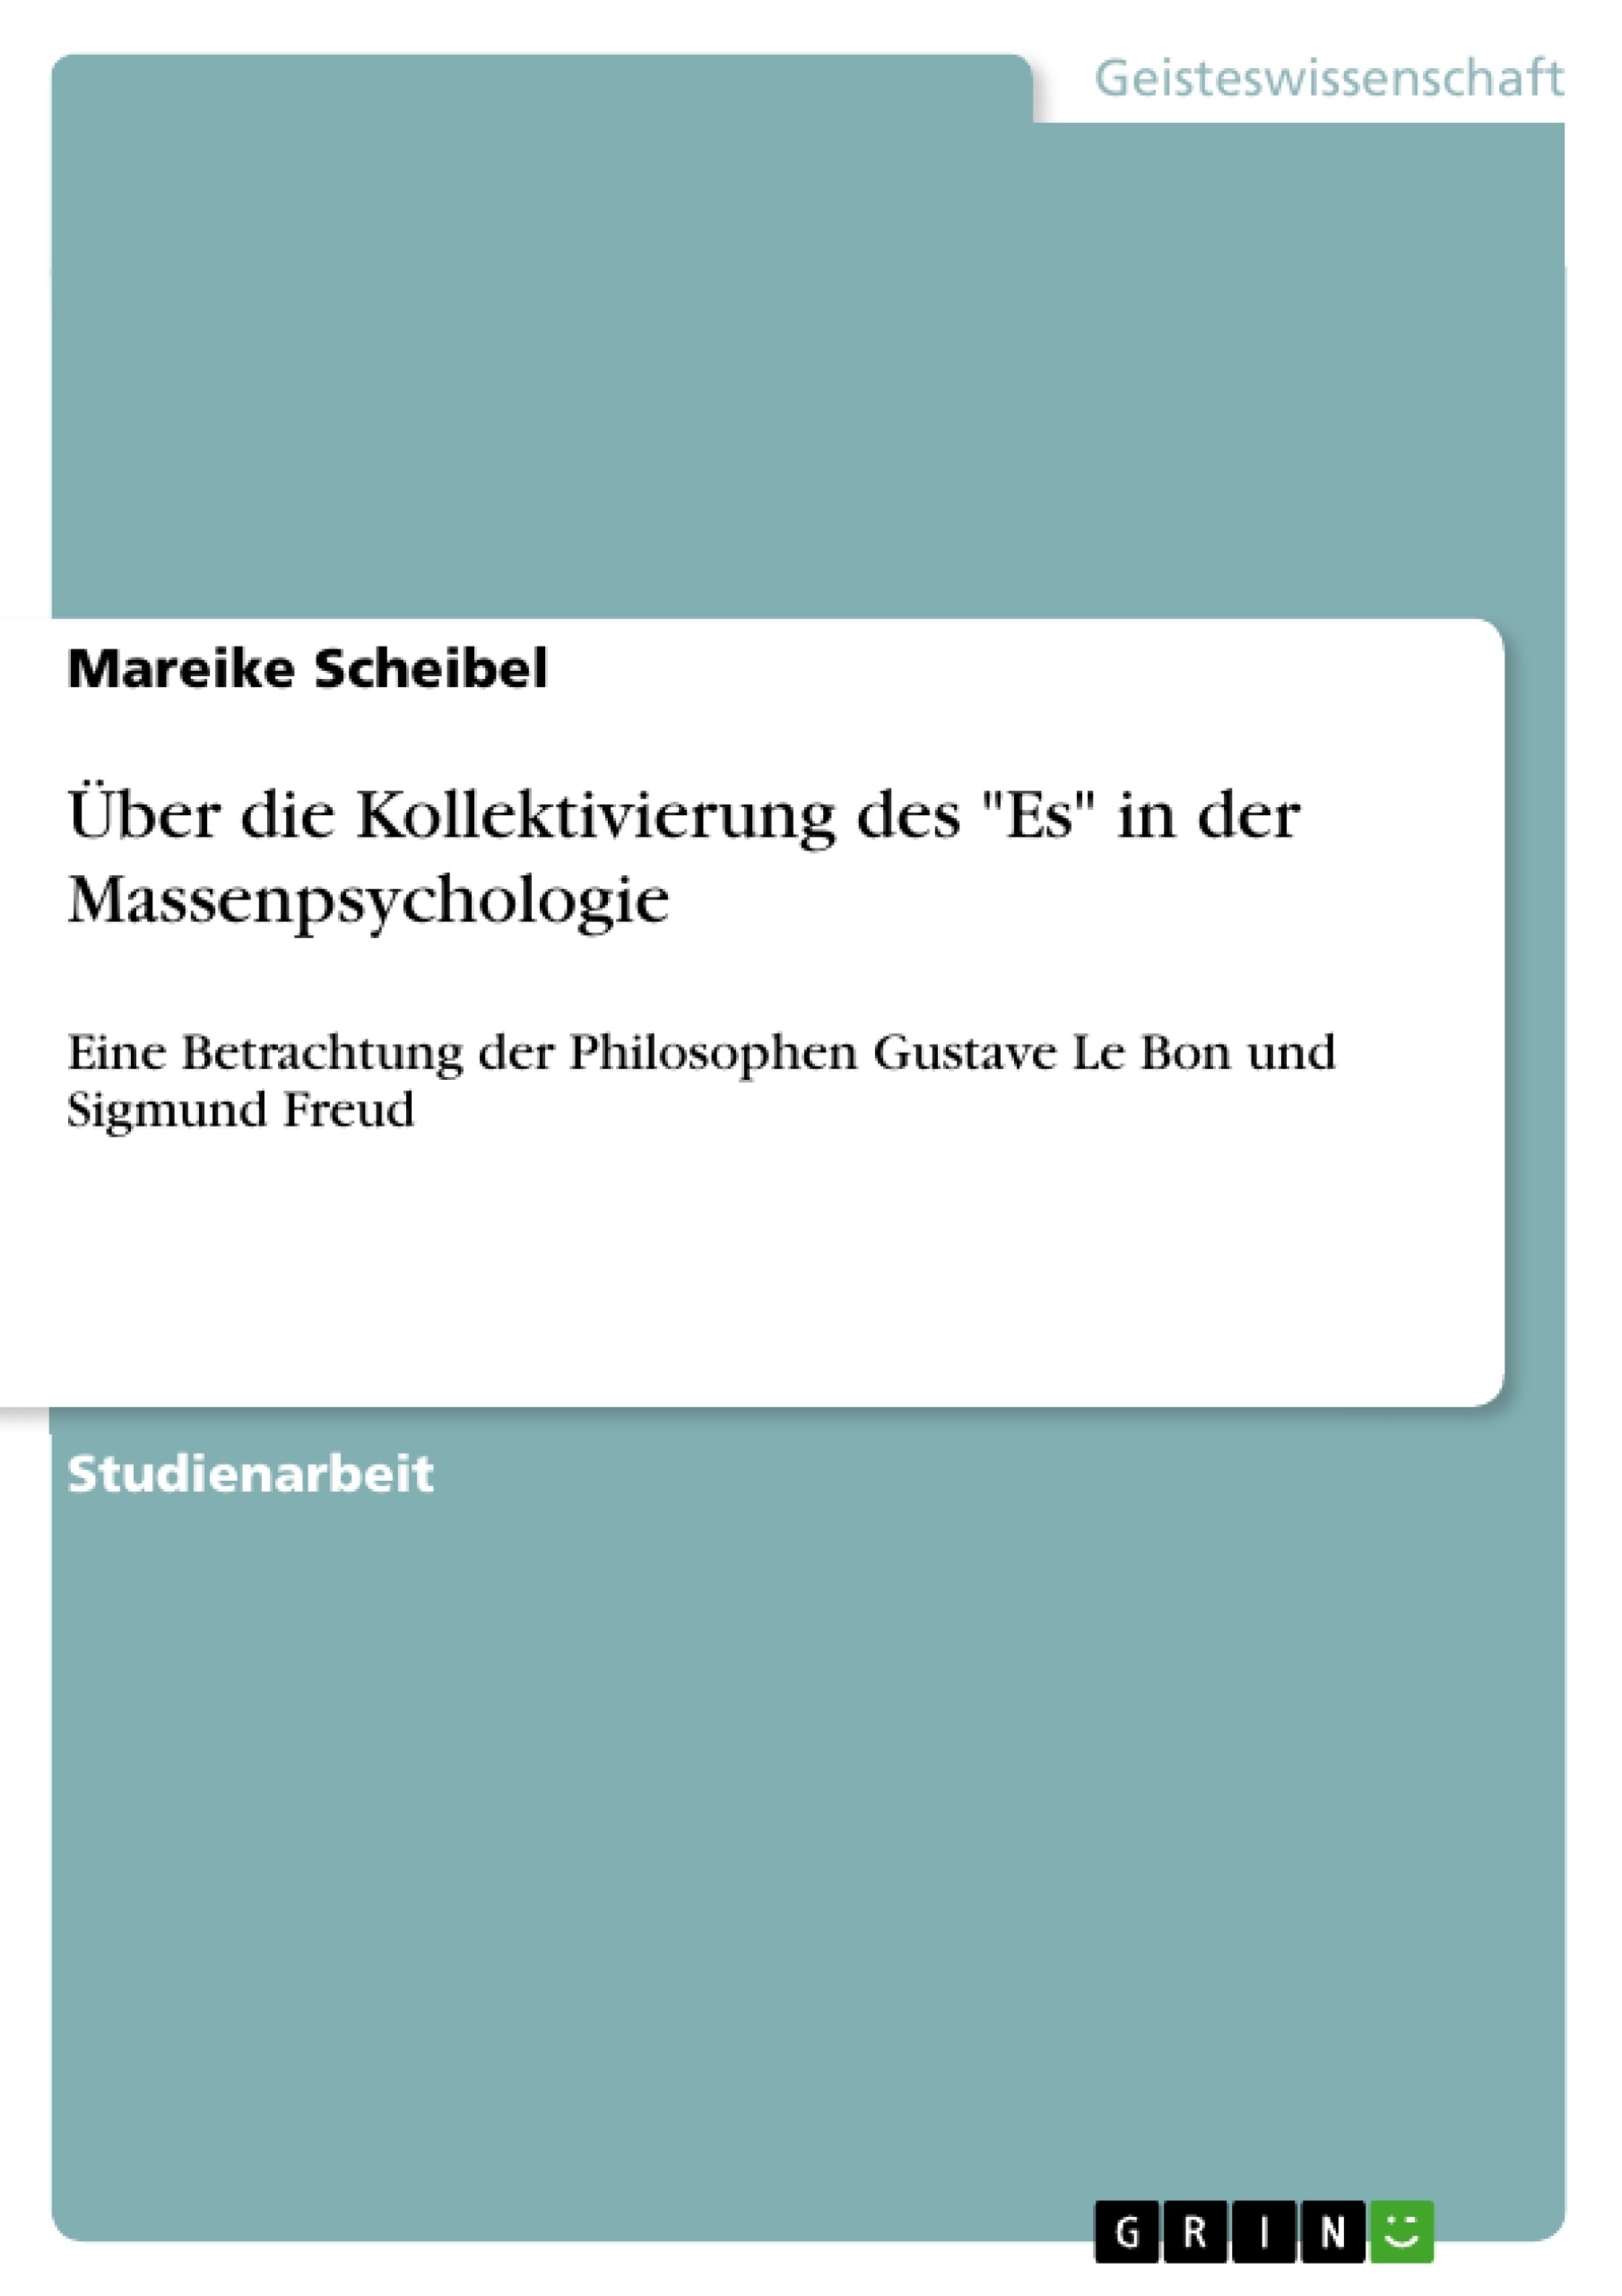 Titel: Über die Kollektivierung des "Es" in der Massenpsychologie